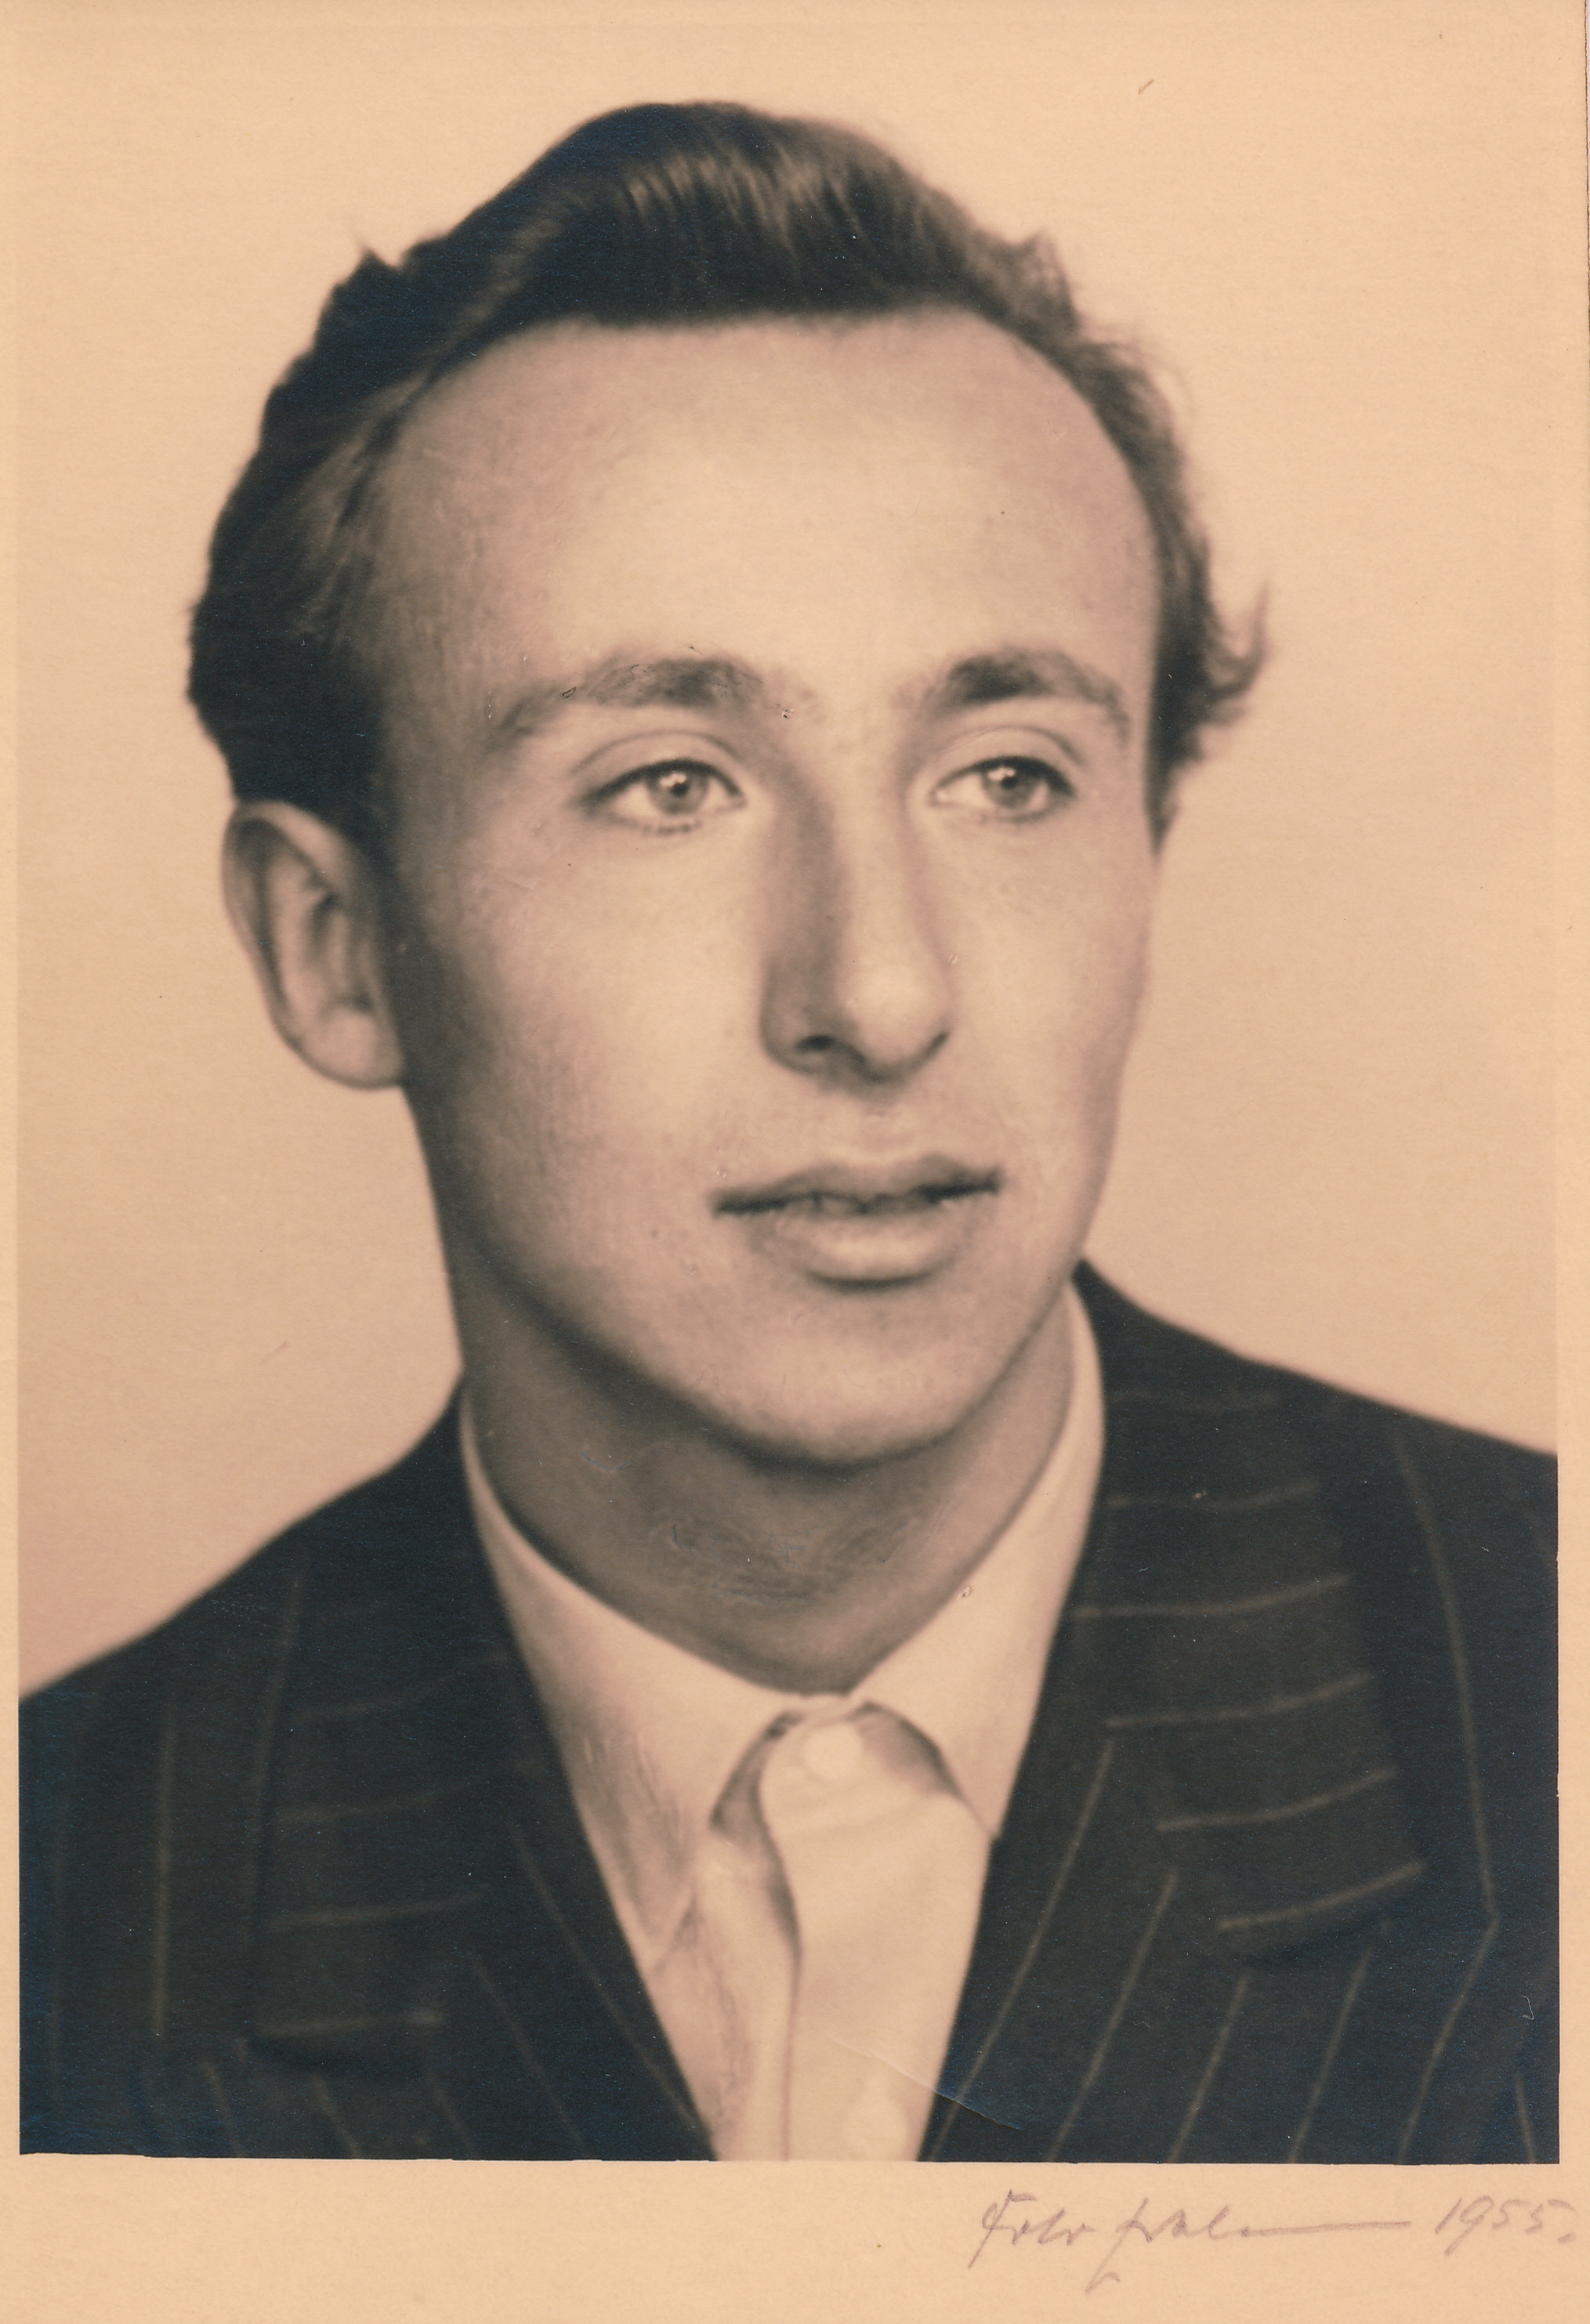 Werner Gumpel, Porträtfotografie, ca. 1955, zur Verfügung gestellt von der Lagergemeinschaft Workuta/GULag Sowjetunion